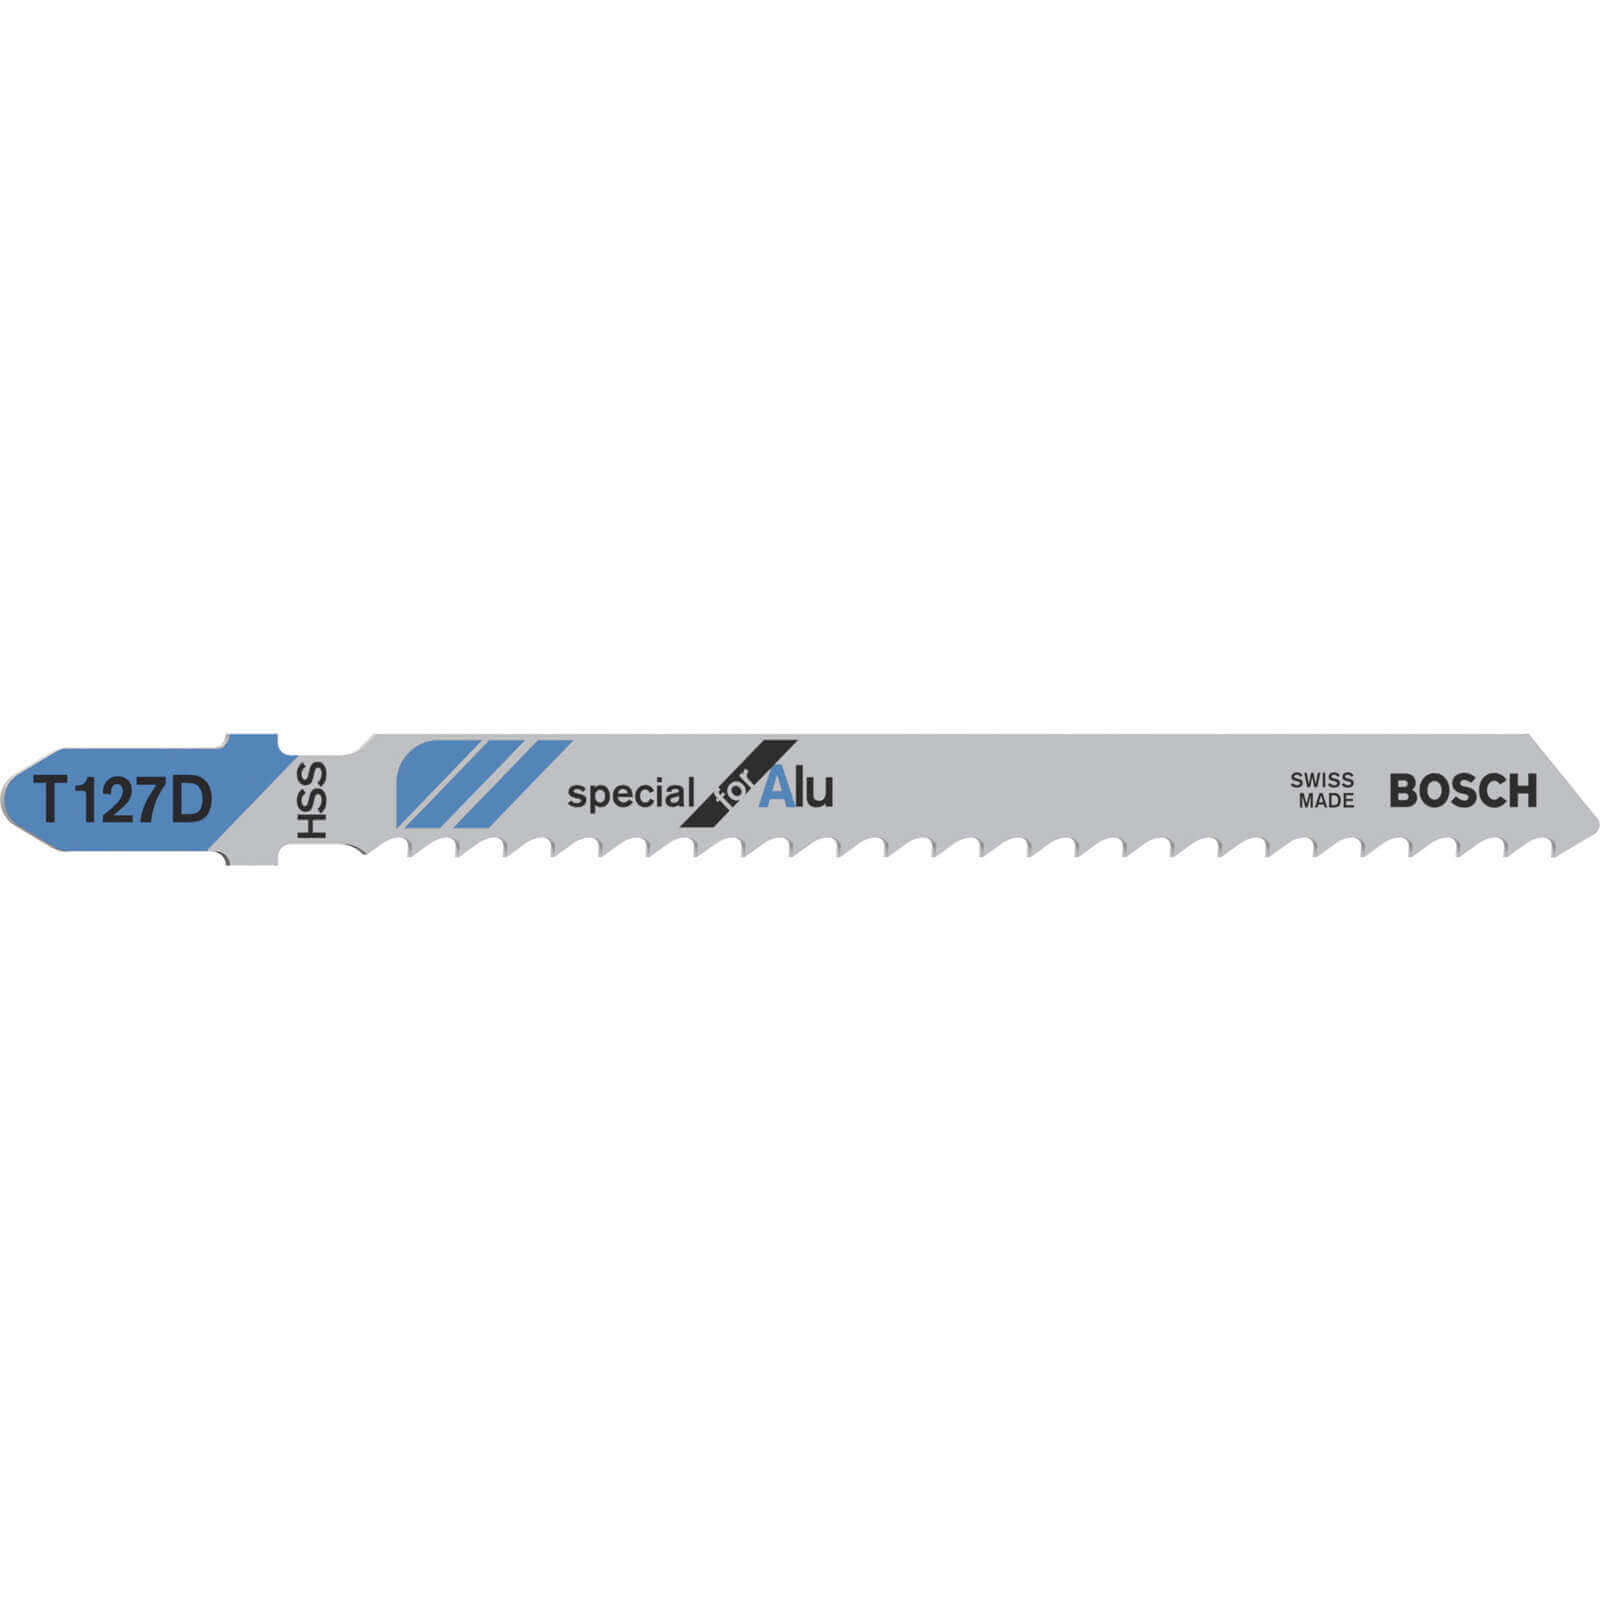 Image of Bosch T127 D Aluminium Cutting Jigsaw Blades Pack of 5